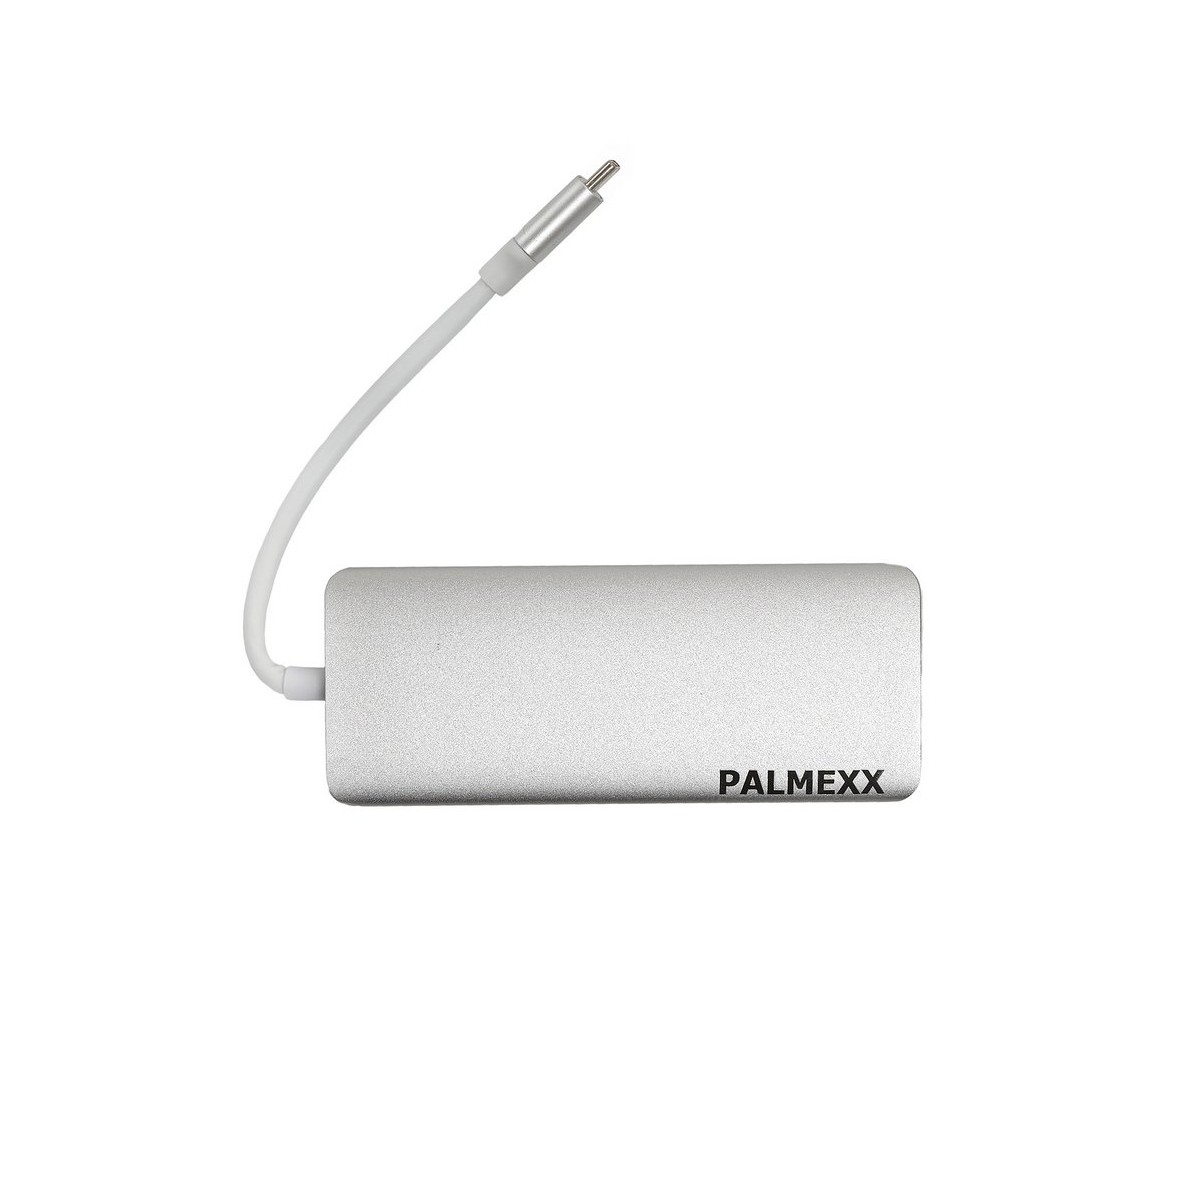 Хаб (разветвитель) Palmexx, 3xUSB 3.0, 1xUSB-C, серебристый + HDMI х 1, RJ-45 х 1, SD х 1, microSD х 1 (PX/HUB-016)